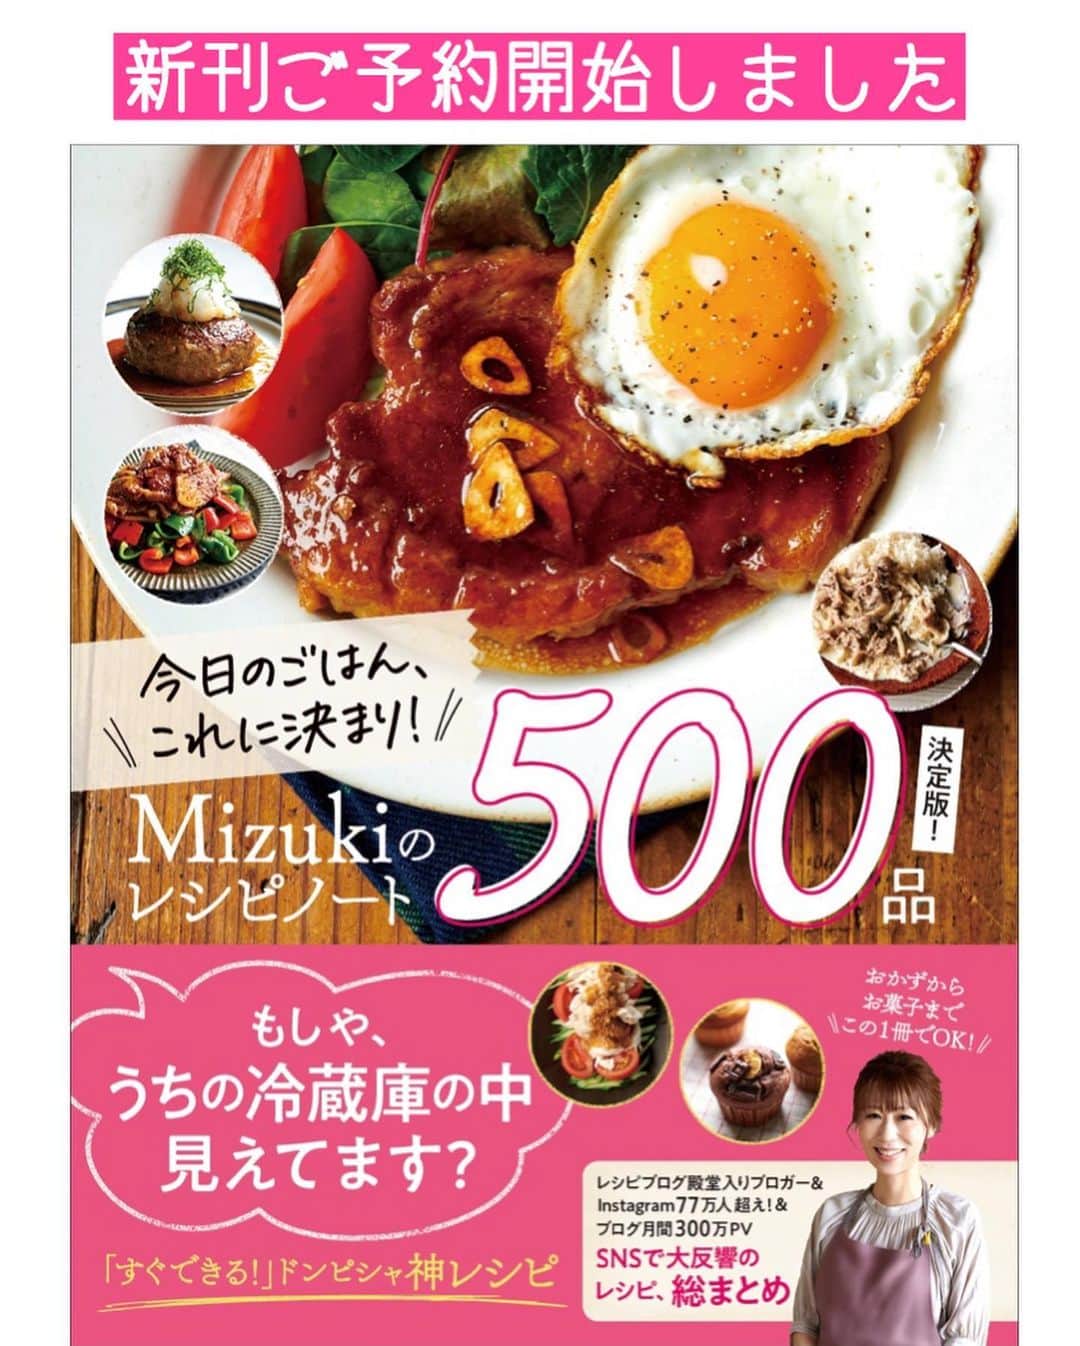 Mizuki【料理ブロガー・簡単レシピ】さんのインスタグラム写真 - (Mizuki【料理ブロガー・簡単レシピ】Instagram)「・ 【#レシピ 】ーーーーーーーーー レンジで6分！鶏チャーシュー ーーーーーーーーーーーーーーー ⁡ ⁡ ⁡ おはようございます(*^^*) ⁡ 今日ご紹介させていただくのは \ レンジで6分！鶏チャーシュー / (再掲載です✨) ⁡ 鶏肉に調味料を揉み込んで レンチンするだけの超簡単レシピ！ ⁡ 今まで何度も作りましたが 今回のレシピが一番おすすめ♩ もも肉でも、むね肉でも 同じように作れますよ〜(*´艸`) ⁡ 日持ちして冷凍もできるので よかったらお試し下さいね♩ お弁当にもおすすめです(*^^*) ⁡ ⁡ ⁡ ＿＿＿＿＿＿＿＿＿＿＿＿＿＿＿＿＿＿＿＿＿ 【2〜3人分】 鶏もも肉(鶏むね肉)...大1枚(300g) ●砂糖・醤油・酒...各大1.5 ●オイスターソース...大1/2 ●生姜チューブ...2cm ⁡ 1.鶏肉は身の厚い部分を開いて均等にし、全体をフォークで刺す。耐熱ボウルに入れ、●を加えてよく揉み込む。 2.鶏肉(皮を下にする)の上にふんわりラップをのせ、600Wのレンジで6分加熱する。 3.粗熱を取り、食べやすい大きさに切って器に盛る。 ￣￣￣￣￣￣￣￣￣￣￣￣￣￣￣￣￣￣￣￣￣ ⁡ ⁡ ⁡ 《ポイント》 ♦︎鶏肉は皮を下にして加熱して下さい♩ ♦︎ラップはボウルにかけず、鶏肉の上にふんわりのせて下さい♩ ♦︎粗熱を取っている間に味が染み、綺麗に色付きます♩時間に余裕があれば一度冷ますと尚◎(皮がたれに浸かる状態にしておく) ♦︎冷蔵庫で4日程保存OK！冷凍も◎ ⁡ ⁡ ⁡ ⁡ ⁡ ⁡ ⁡ ⁡ \ 新刊予約開始しました /(9月24日発売) ⁡ 🔹🔹🔹🔹🔹🔹🔹🔹🔹🔹🔹🔹 今日のごはんこれに決まり！ #Mizukiのレシピノート 決定版 500品 🔹🔹🔹🔹🔹🔹🔹🔹🔹🔹🔹🔹 ⁡ 総レシピ6000点の中からレシピを厳選！ まさかの【500レシピ掲載】しました⭐️ (もはや辞典...) ⁡ 肉や魚のメインおかずはもちろん 副菜、丼、麺、スープ、お菓子 ハレの日のレシピ、鍋のレシピまで 全てこの一冊で完結！！ ⁡ ⁡ 🎁新刊予約でエプロンが当たる🎁 プレゼントキャンペーン実施中 ￣￣￣￣￣￣￣￣￣￣￣￣￣￣￣￣￣￣￣￣￣ 【応募方法】 ❶1枚目に表紙画像 2枚目にAmazonで予約したことがわかる画像 (どちらもスクショでOK)を貼りつける。 ❷ハッシュタグ【#Mizukiのレシピノート 】 をつけて投稿！ ￣￣￣￣￣￣￣￣￣￣￣￣￣￣￣￣￣￣￣￣￣￣ ⁡ ⁡ ⁡ ⁡ ⁡ ＿＿＿＿＿＿＿＿＿＿＿＿＿＿＿＿ 🟥YouTube 料理動画配信中🟥 ￣￣￣￣￣￣￣￣￣￣￣￣￣￣￣￣ 料理とお菓子の簡単レシピを ご紹介しています☺️💓 ⁡ 【奇跡のキッチン】で検索🔍 (ハイライトからも飛べます✨) ￣￣￣￣￣￣￣￣￣￣￣￣￣￣￣￣ ⁡ ⁡ ⁡ ＿＿＿＿＿＿＿＿＿＿＿＿＿＿＿＿ 🔶🔶recipe book🔶🔶 ￣￣￣￣￣￣￣￣￣￣￣￣￣￣￣￣ ホケミレシピの決定版♩ \はじめてでも失敗しない/ 📙#ホットケーキミックスのお菓子 ⁡ NHKまる得マガジンテキスト☆ #ホットケーキミックス で ⁡ 📗絶品おやつ&意外なランチ ⁡ しんどくない献立、考えました♩ \𝟣𝟧分でいただきます/ 📕#Mizukiの2品献立 ⁡ 和食をもっとカジュアルに♩ \毎日のごはんがラクになる/ 📘#Mizukiの今どき和食  ＿＿＿＿＿＿＿＿＿＿＿＿＿＿＿＿＿ ⁡ ⁡ ⁡ ⁡ #レンジで絶品鶏チャーシューm #鶏チャーシュー #レンジ #お弁当 #作り置き #mizuki #簡単レシピ #時短レシピ #節約レシピ #料理 #料理初心者  #時短ごはん #節約ごはん #フーディーテーブル #おうちごはん #デリスタグラマー #おうちごはんlover #料理好きな人と繋がりたい #写真好きな人と繋がりたい #foodpick#cooking#recipe #foodporn」8月27日 7時21分 - mizuki_31cafe